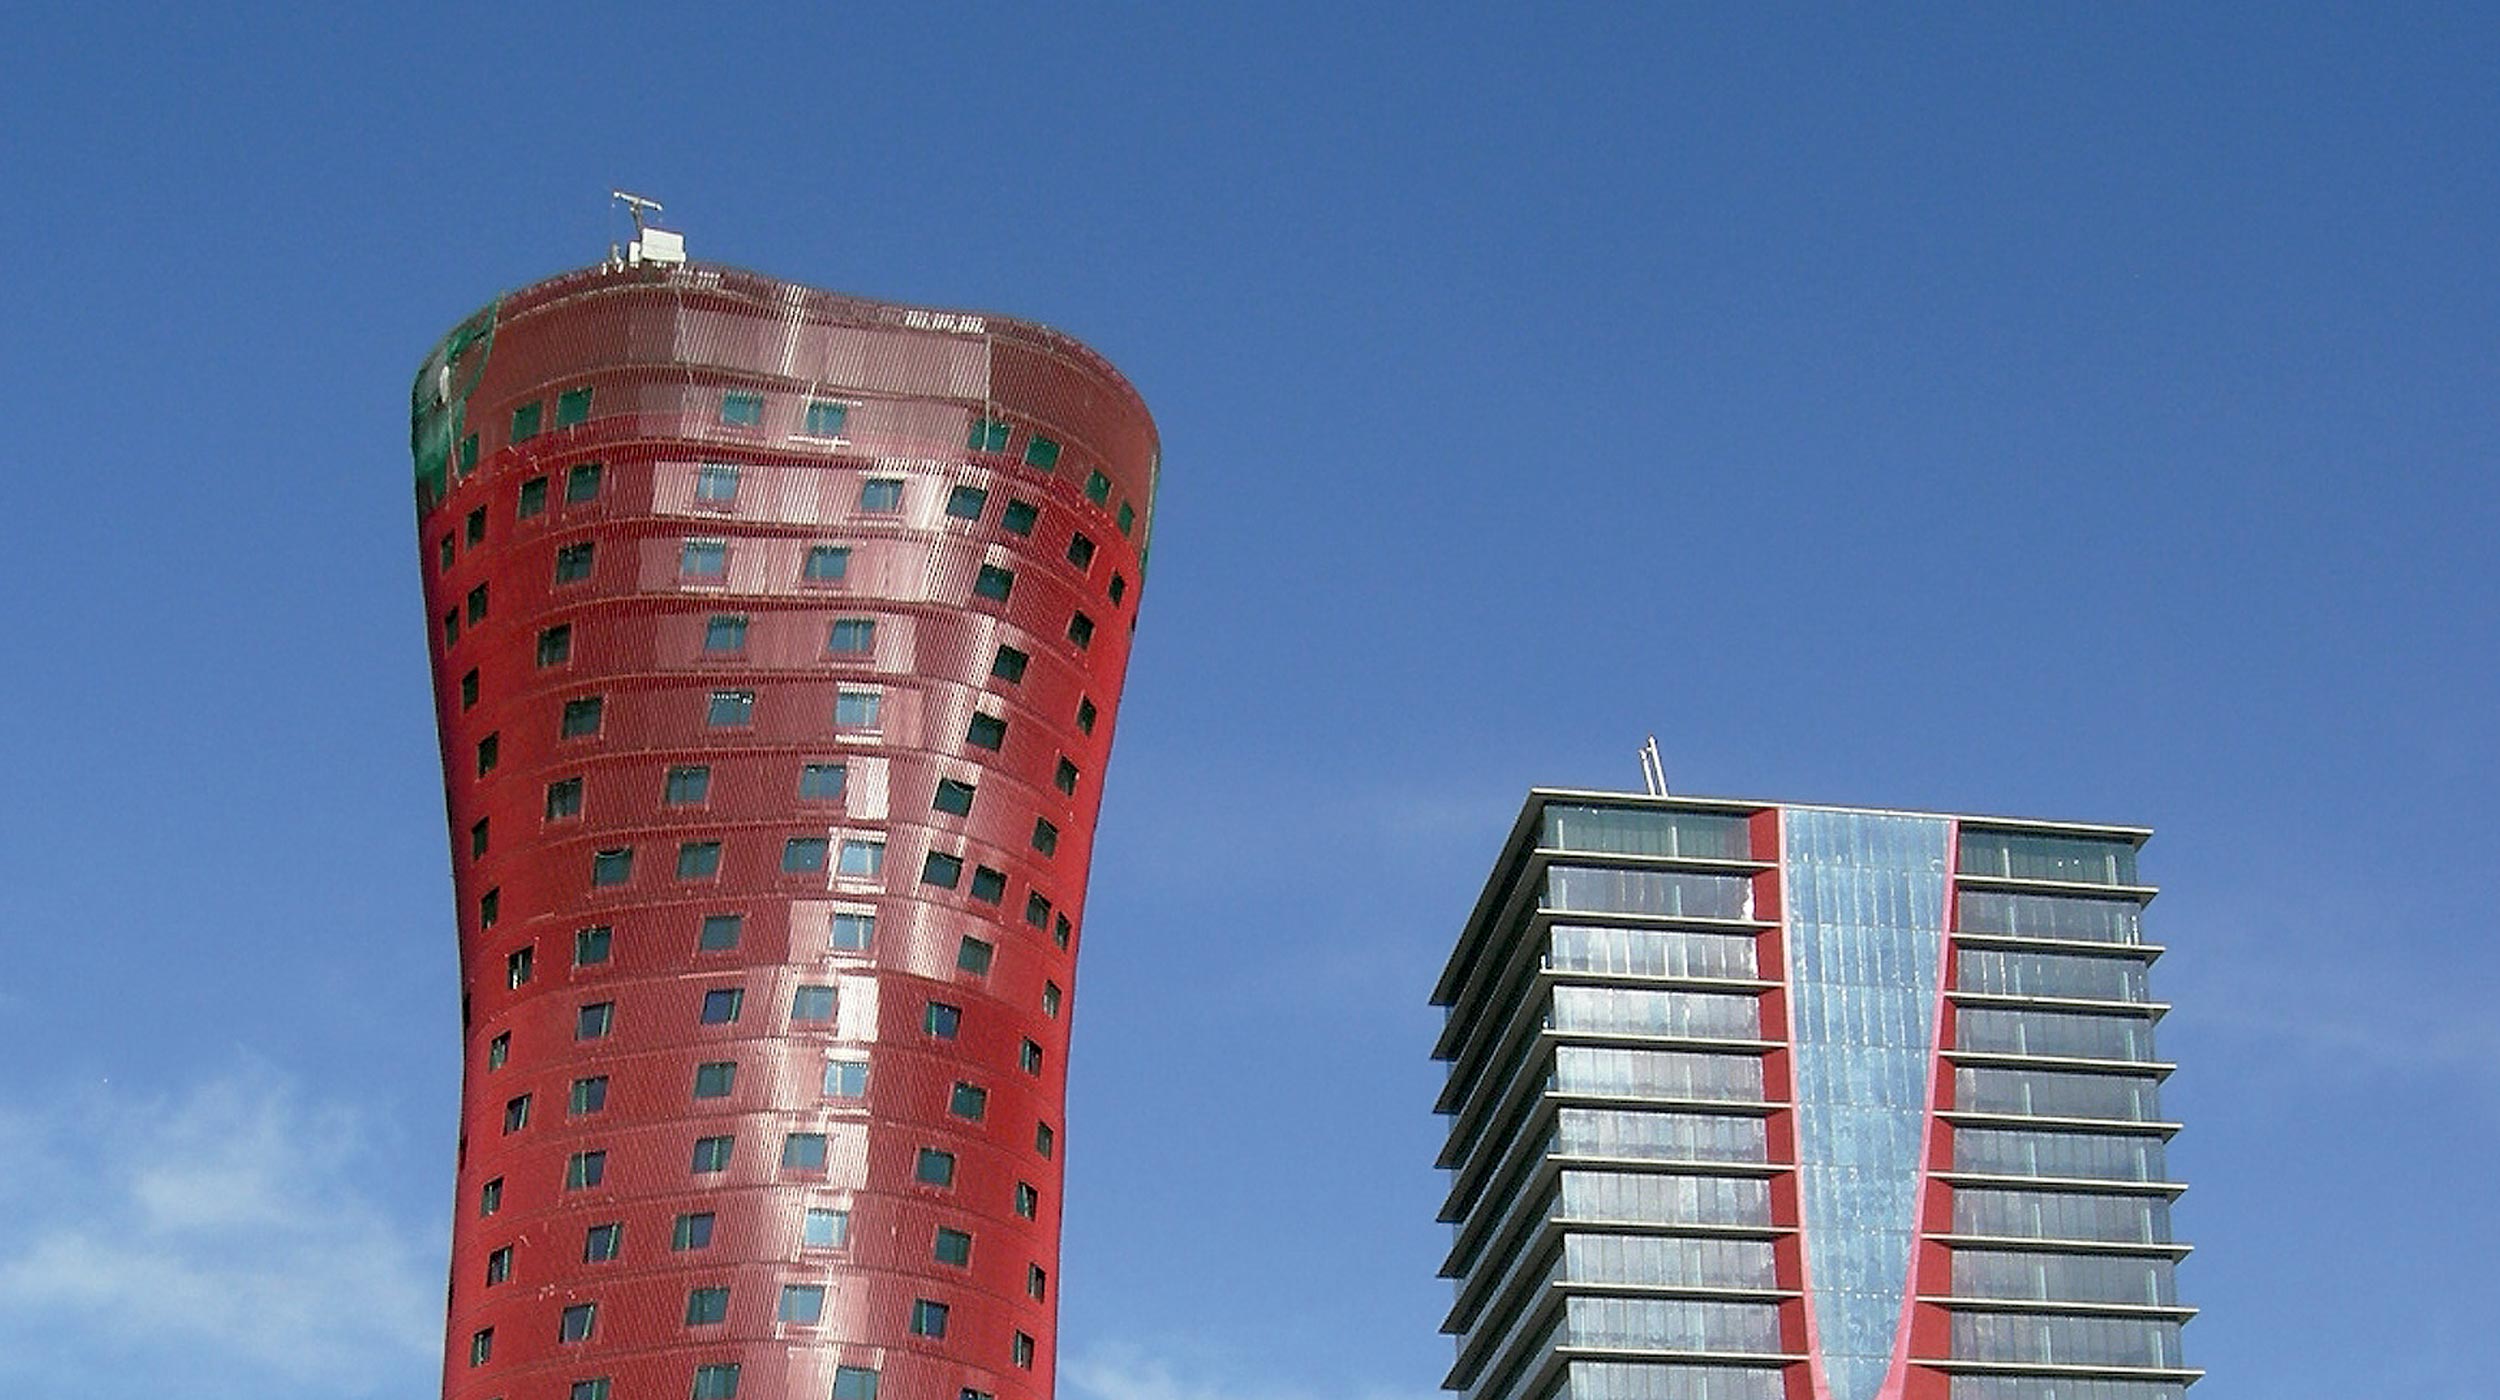 As duas torres, projetadas pelo conhecido arquiteto Toyo Ito, contam com uma altura aproximada de 120 m.